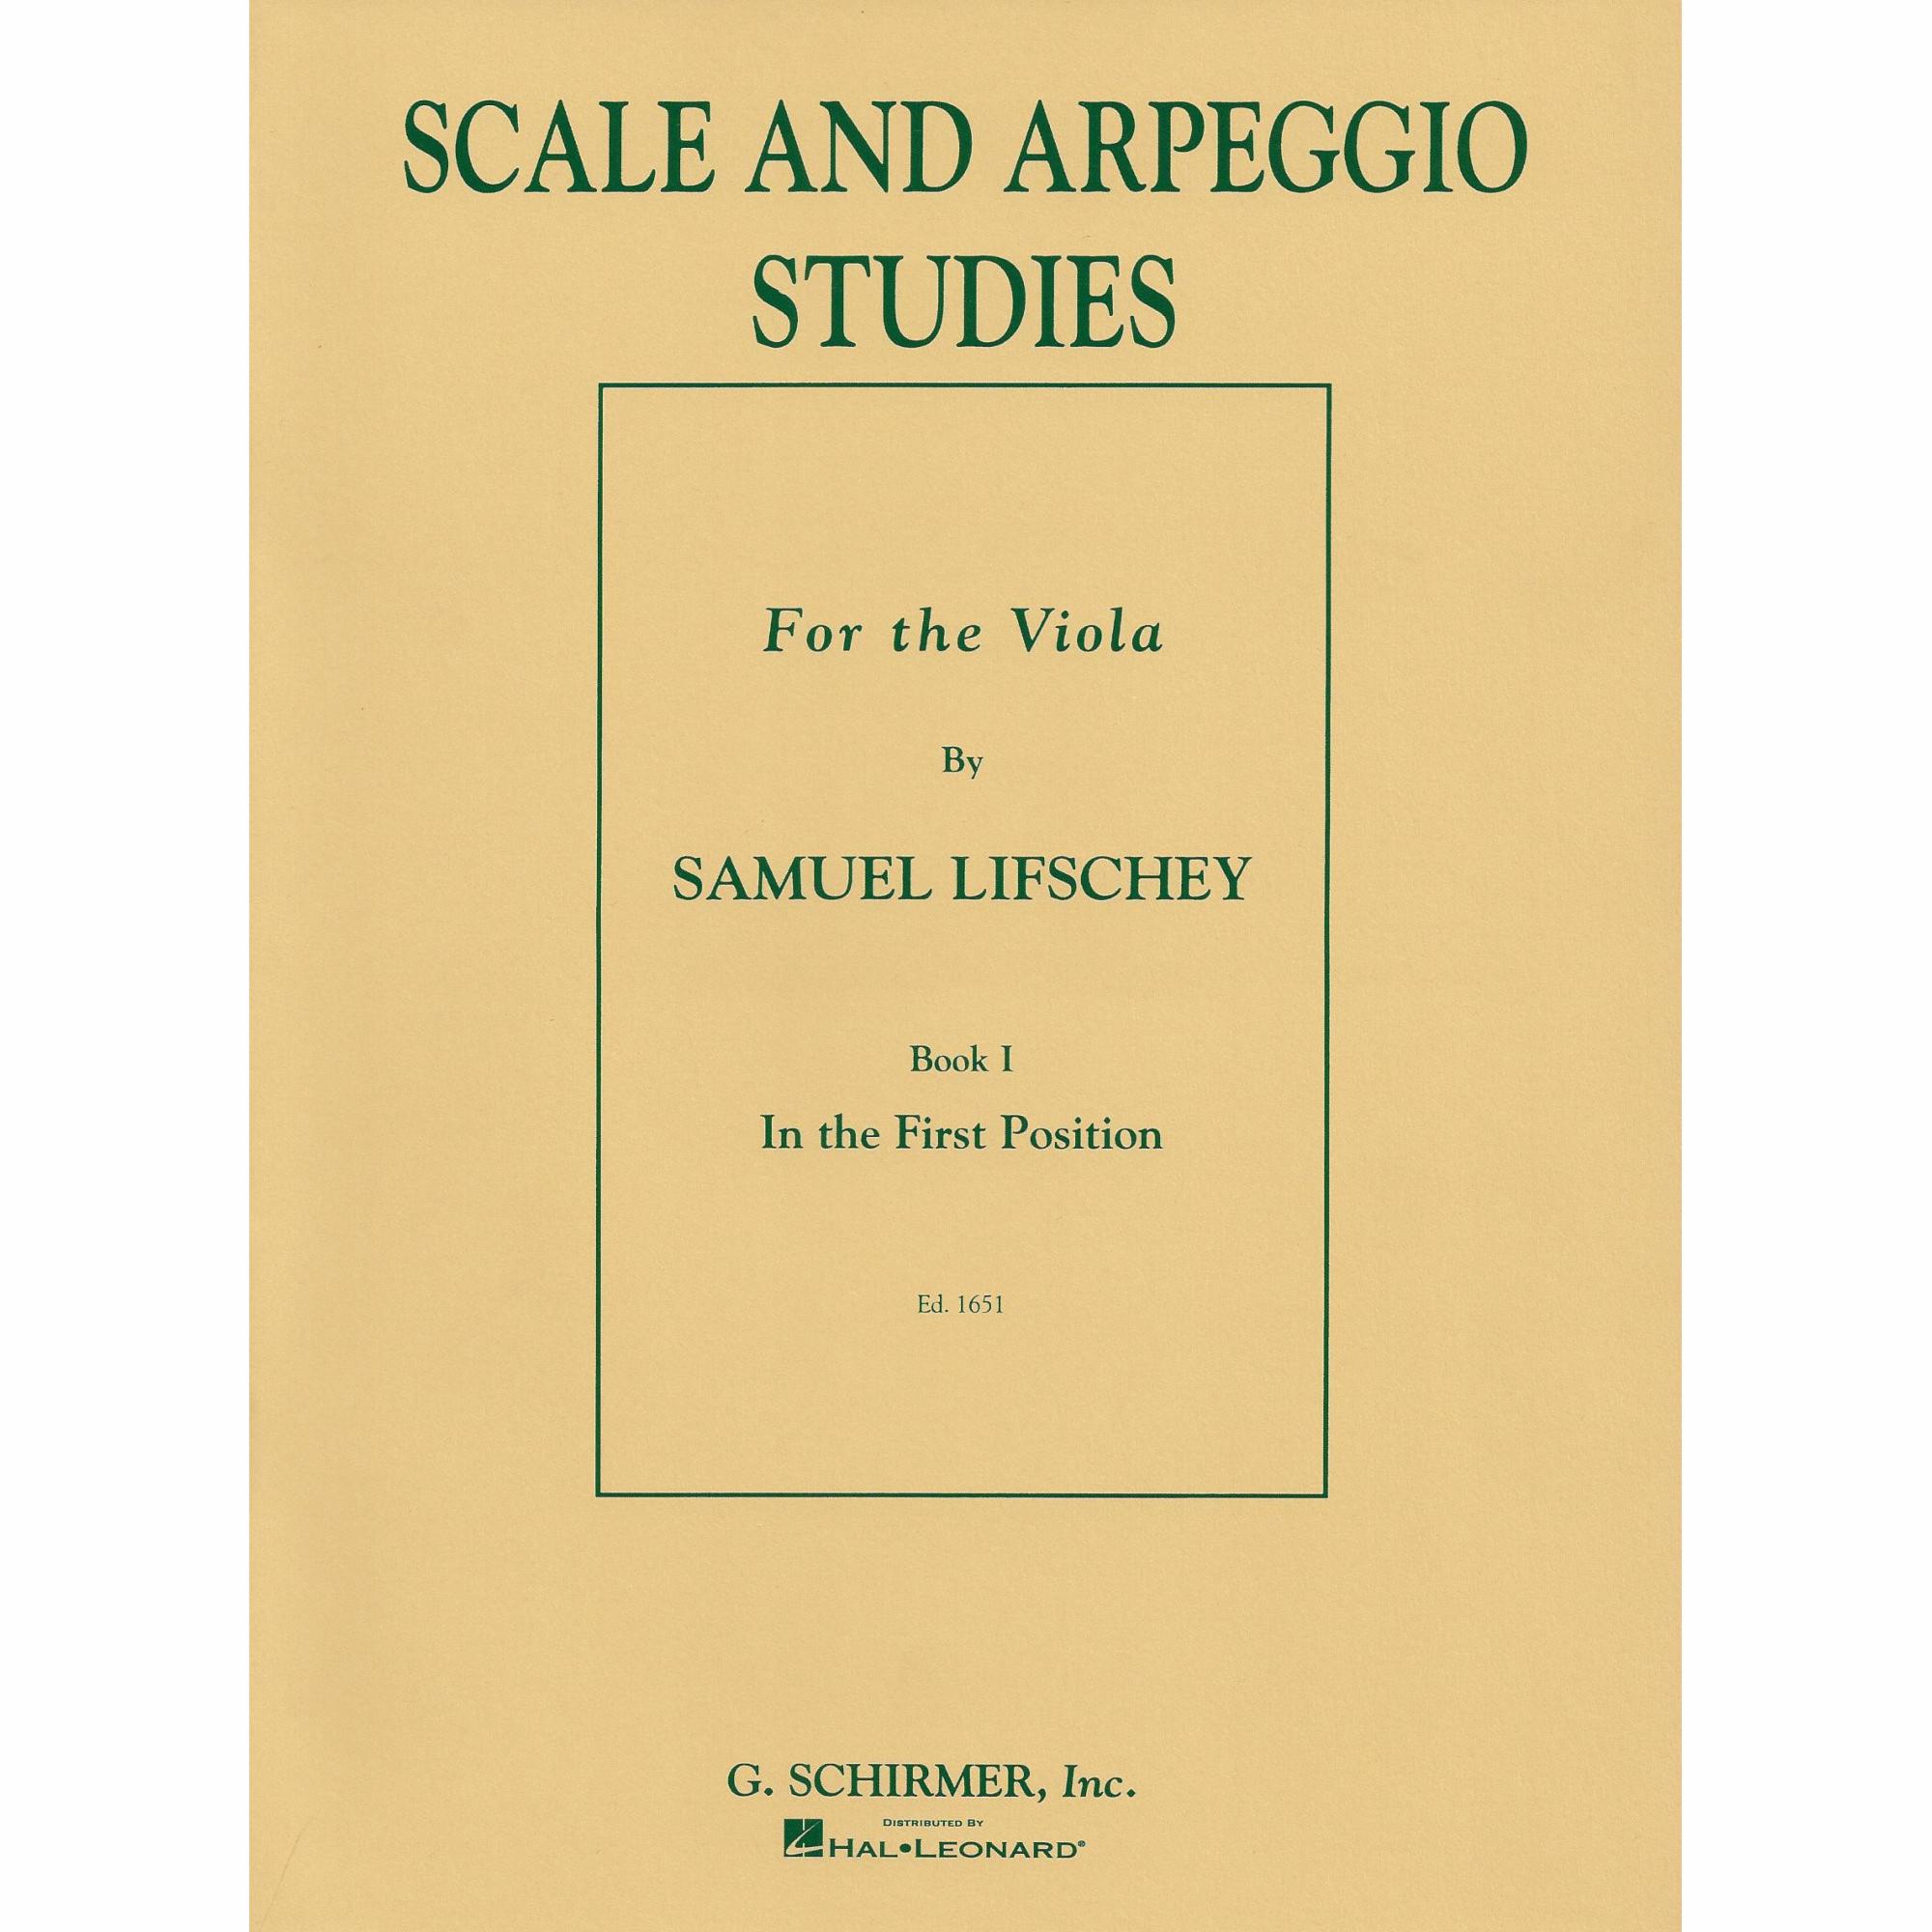 Scale and Arpeggio Studies, Book 1 for Viola